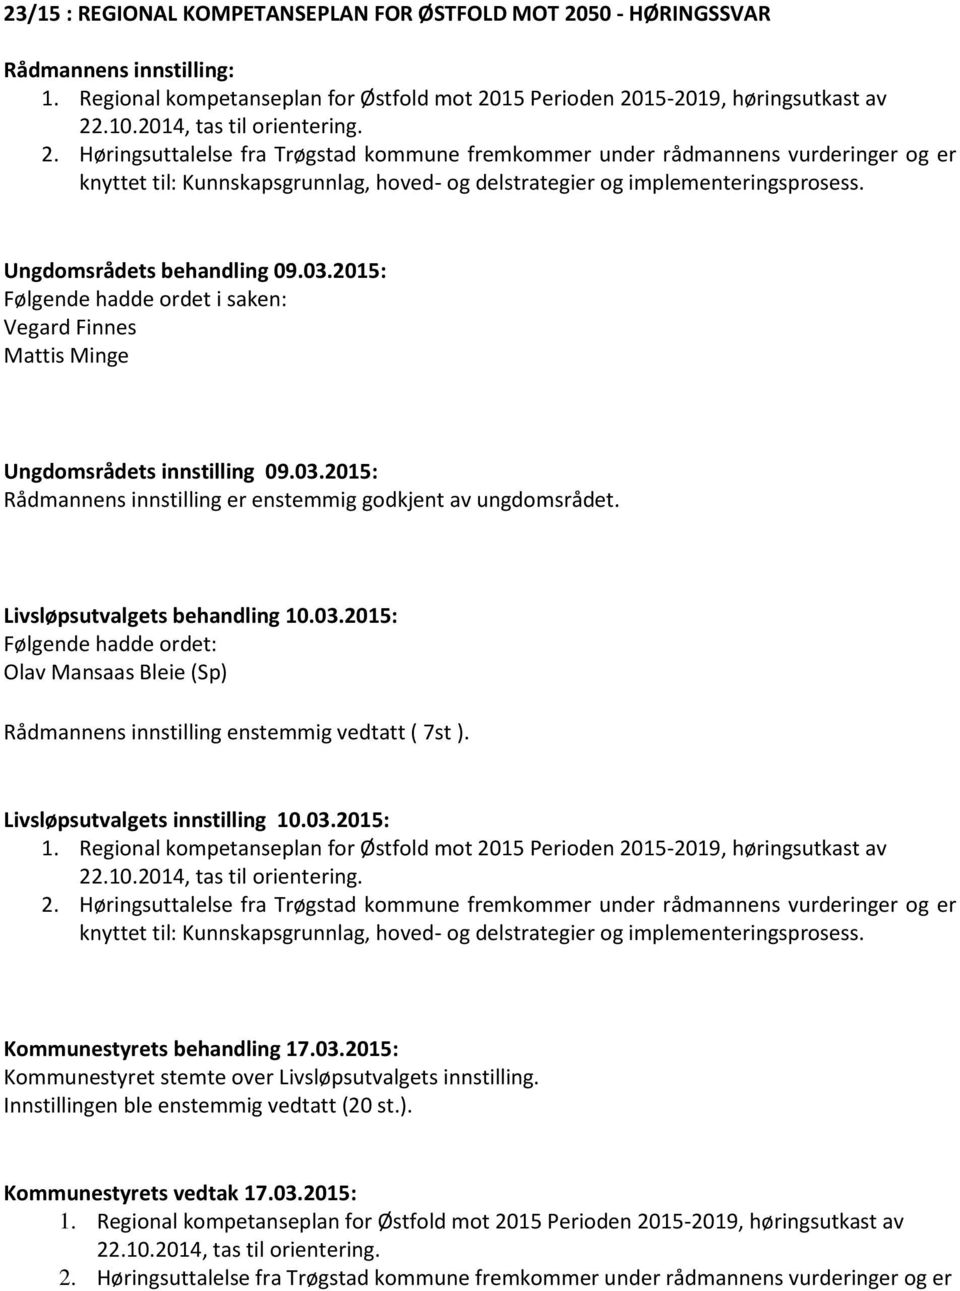 15 Perioden 2015-2019, høringsutkast av 22.10.2014, tas til orientering. 2. Høringsuttalelse fra Trøgstad kommune fremkommer under rådmannens vurderinger og er knyttet til: Kunnskapsgrunnlag, hoved- og delstrategier og implementeringsprosess.